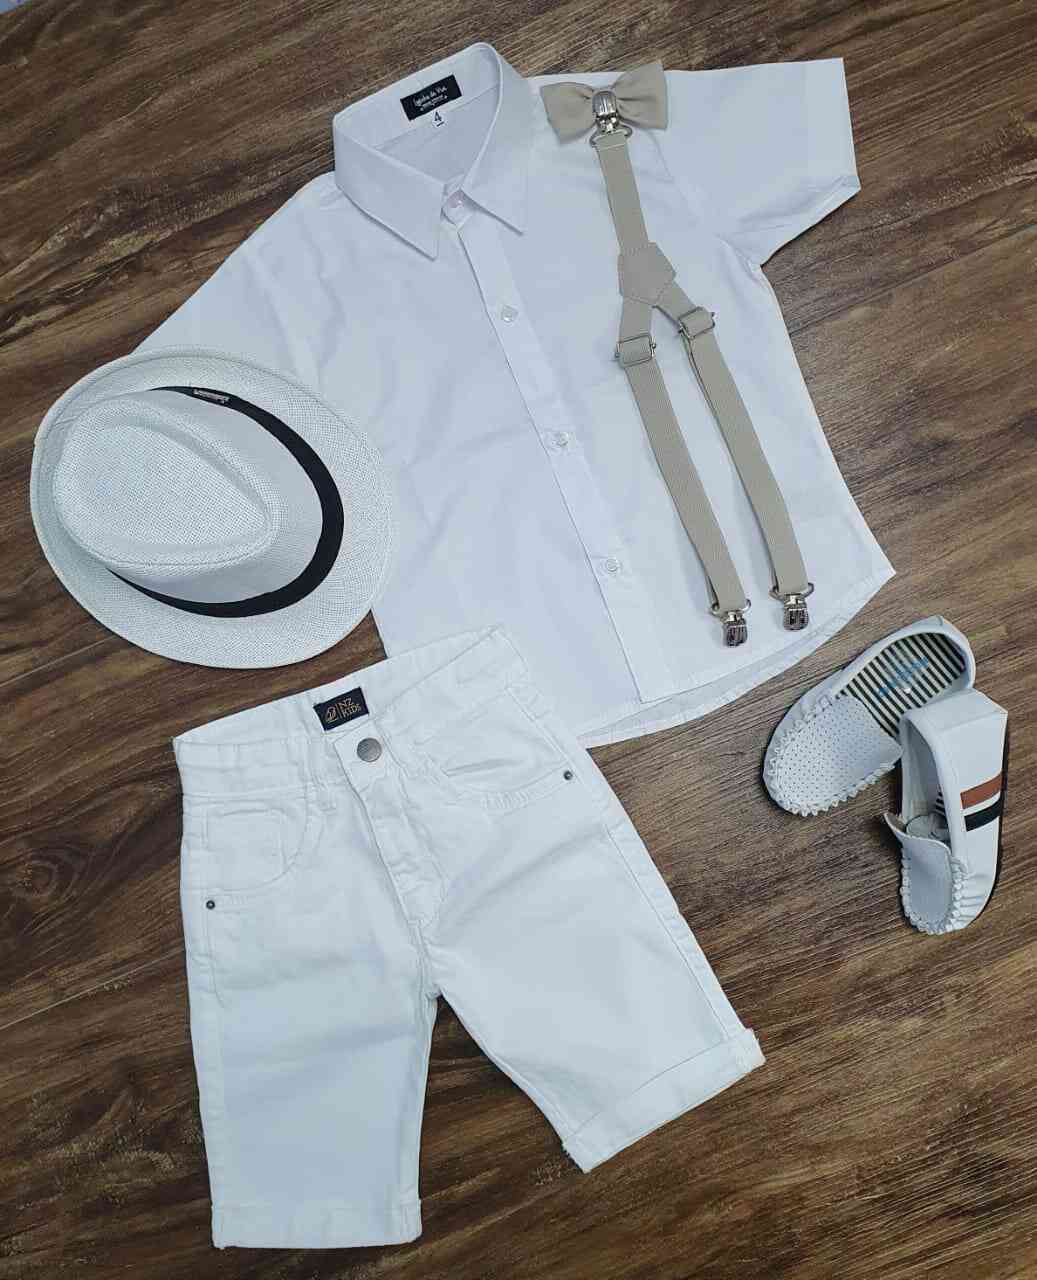 Bermuda Branca com Suspensório e Camisa Social Branca com Gravata